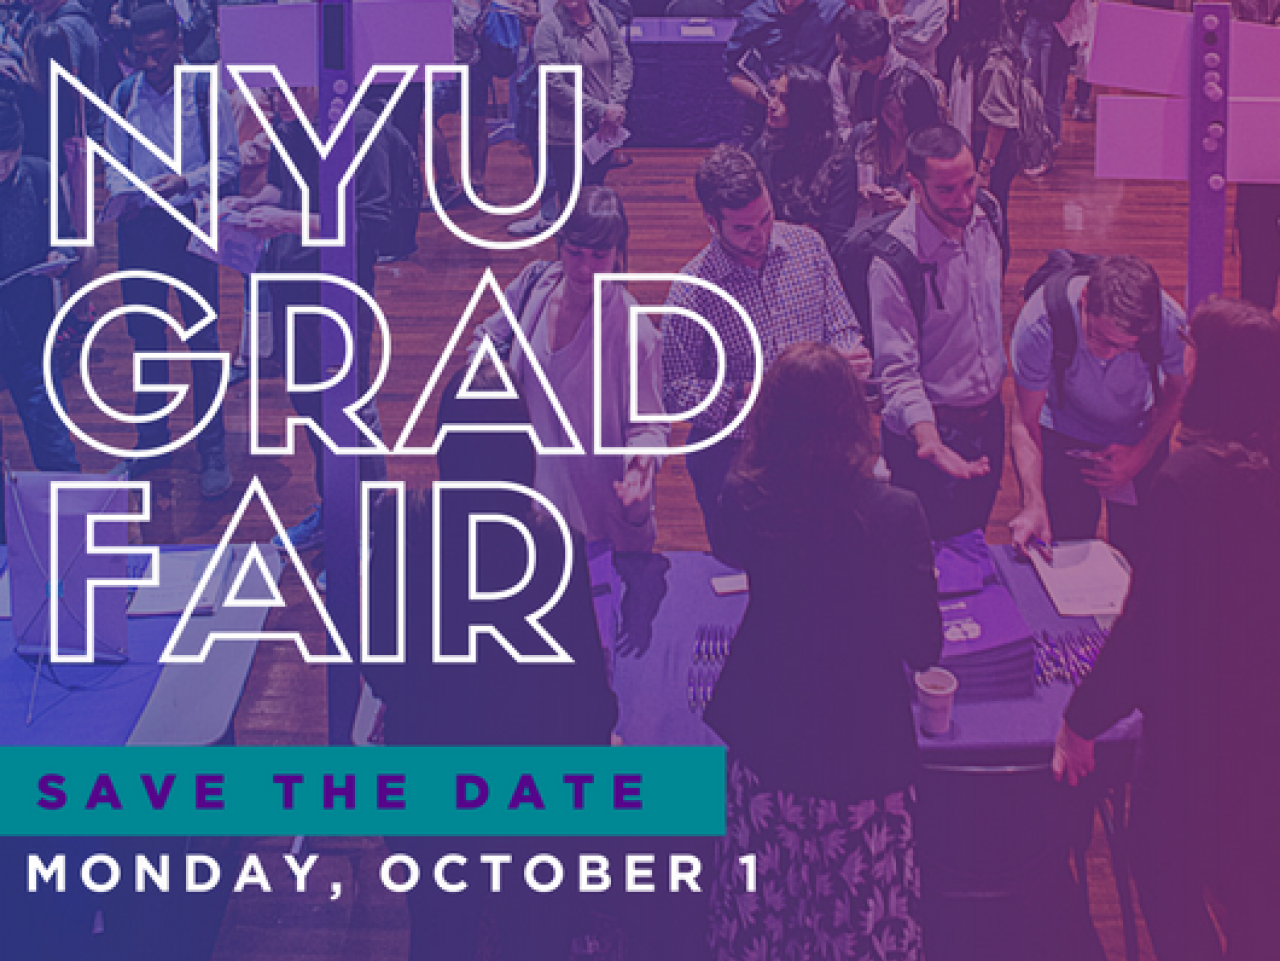 NYU Grad Fair, Save the Date, Monday, October 1